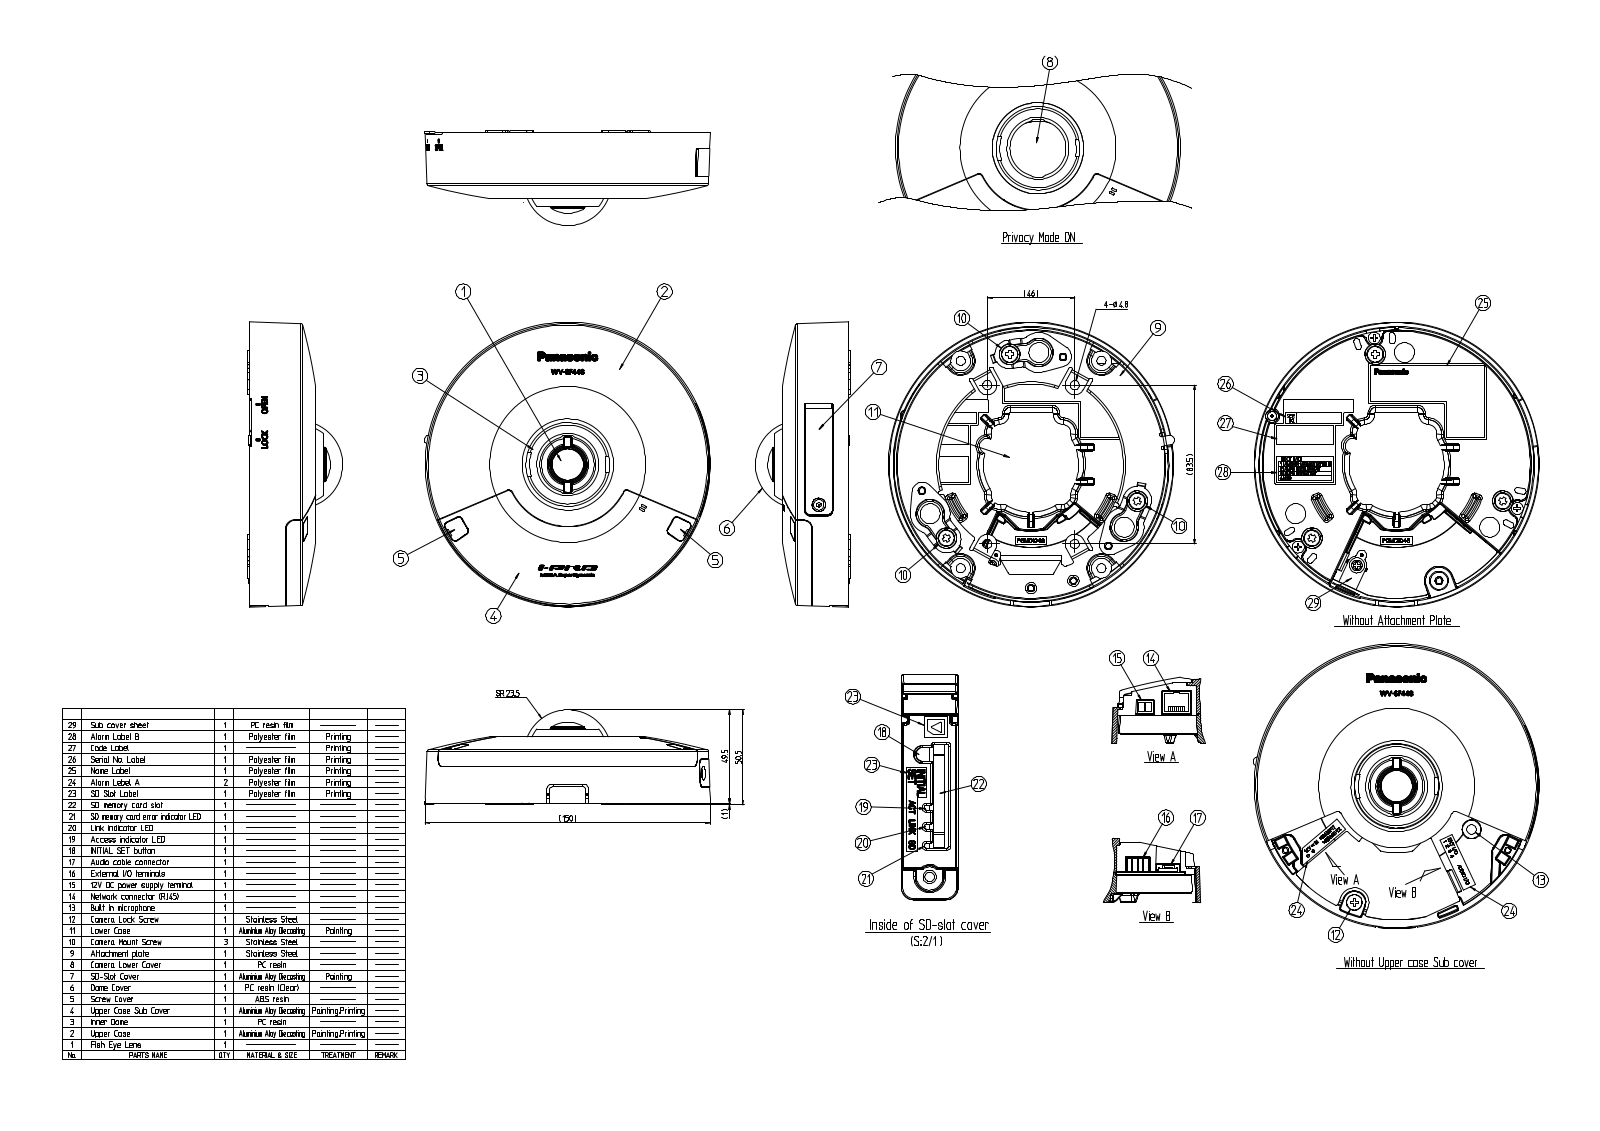 Panasonic WV-SF448 User Manual